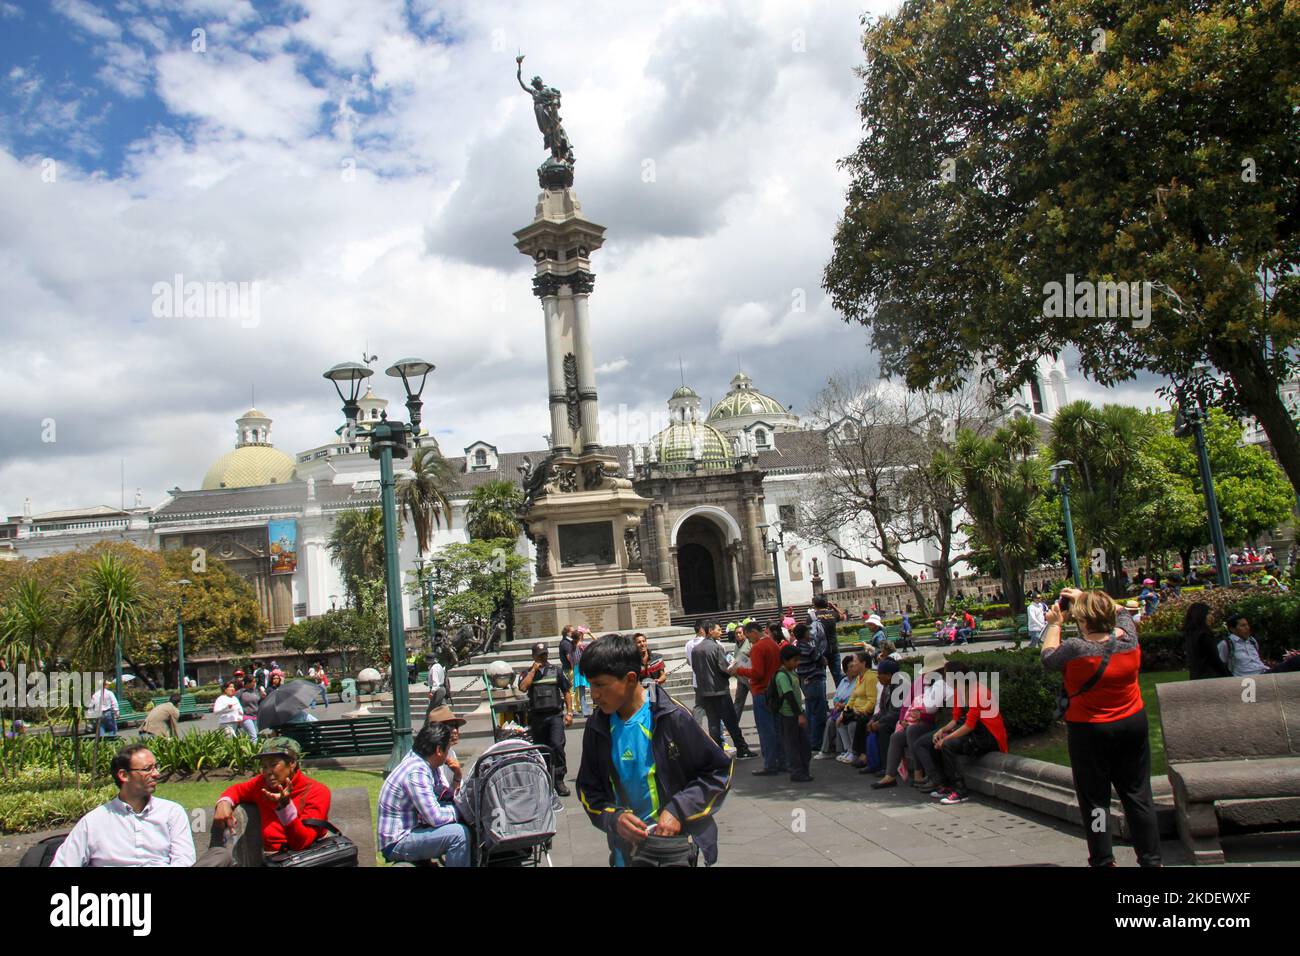 Mémorial aux héros du 10 août 1809 qui a commencé le processus d'indépendance équatorienne de l'Espagne. Plaza Grande, Quito Equateur. Banque D'Images